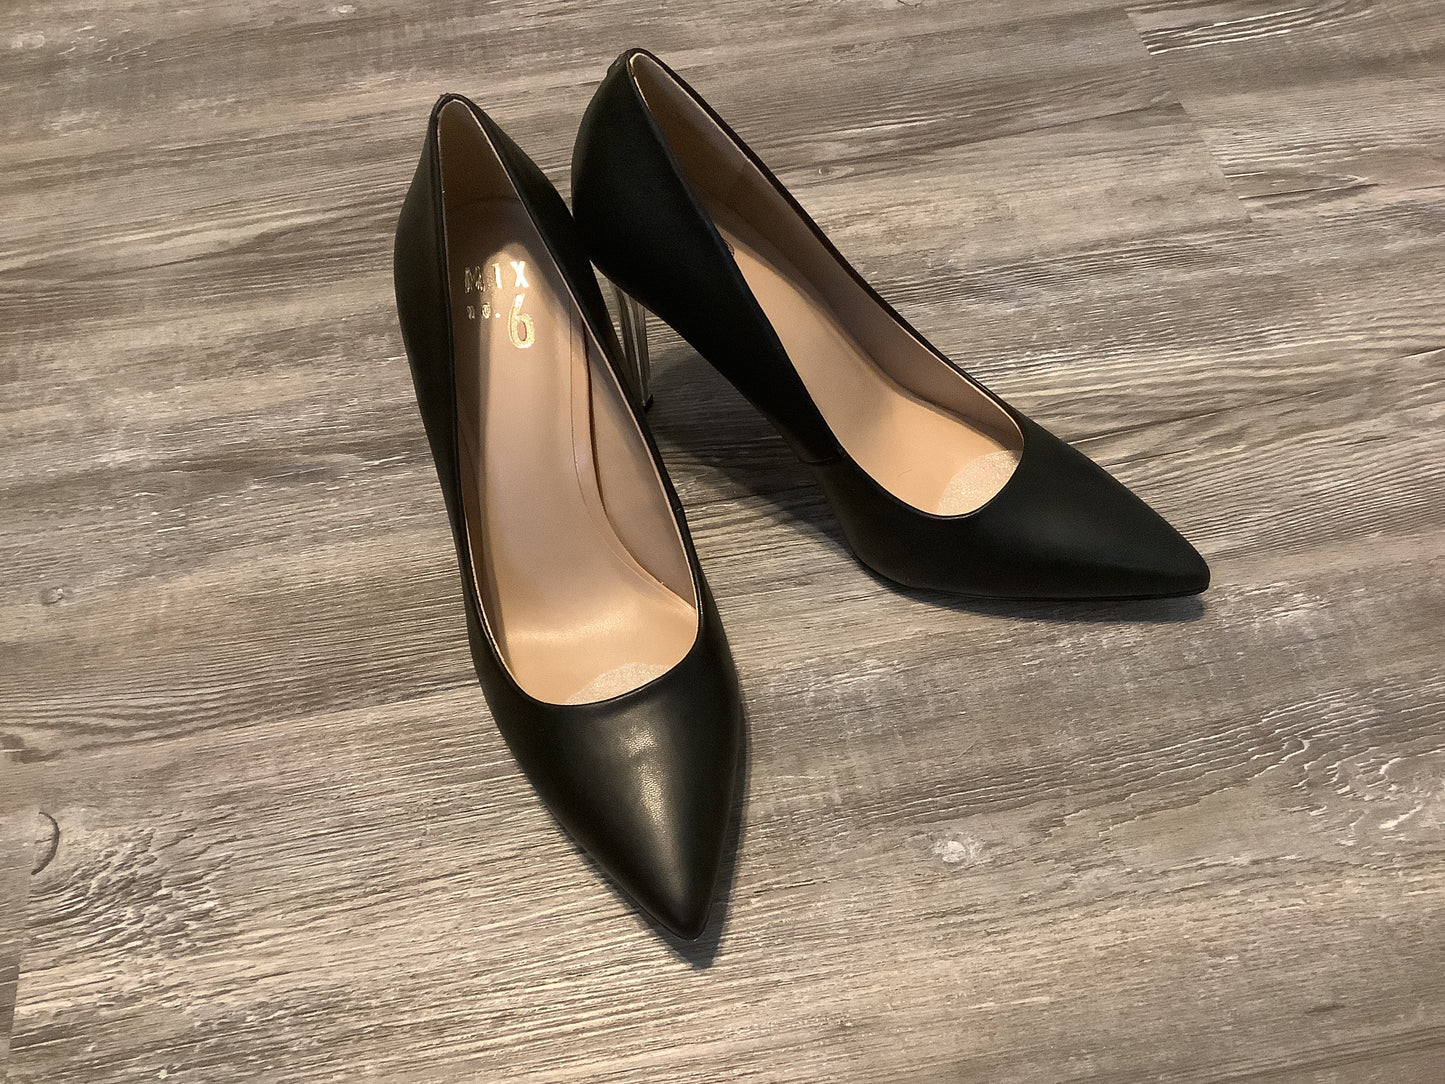 Black Shoes Heels Stiletto Mix No 6, Size 9.5